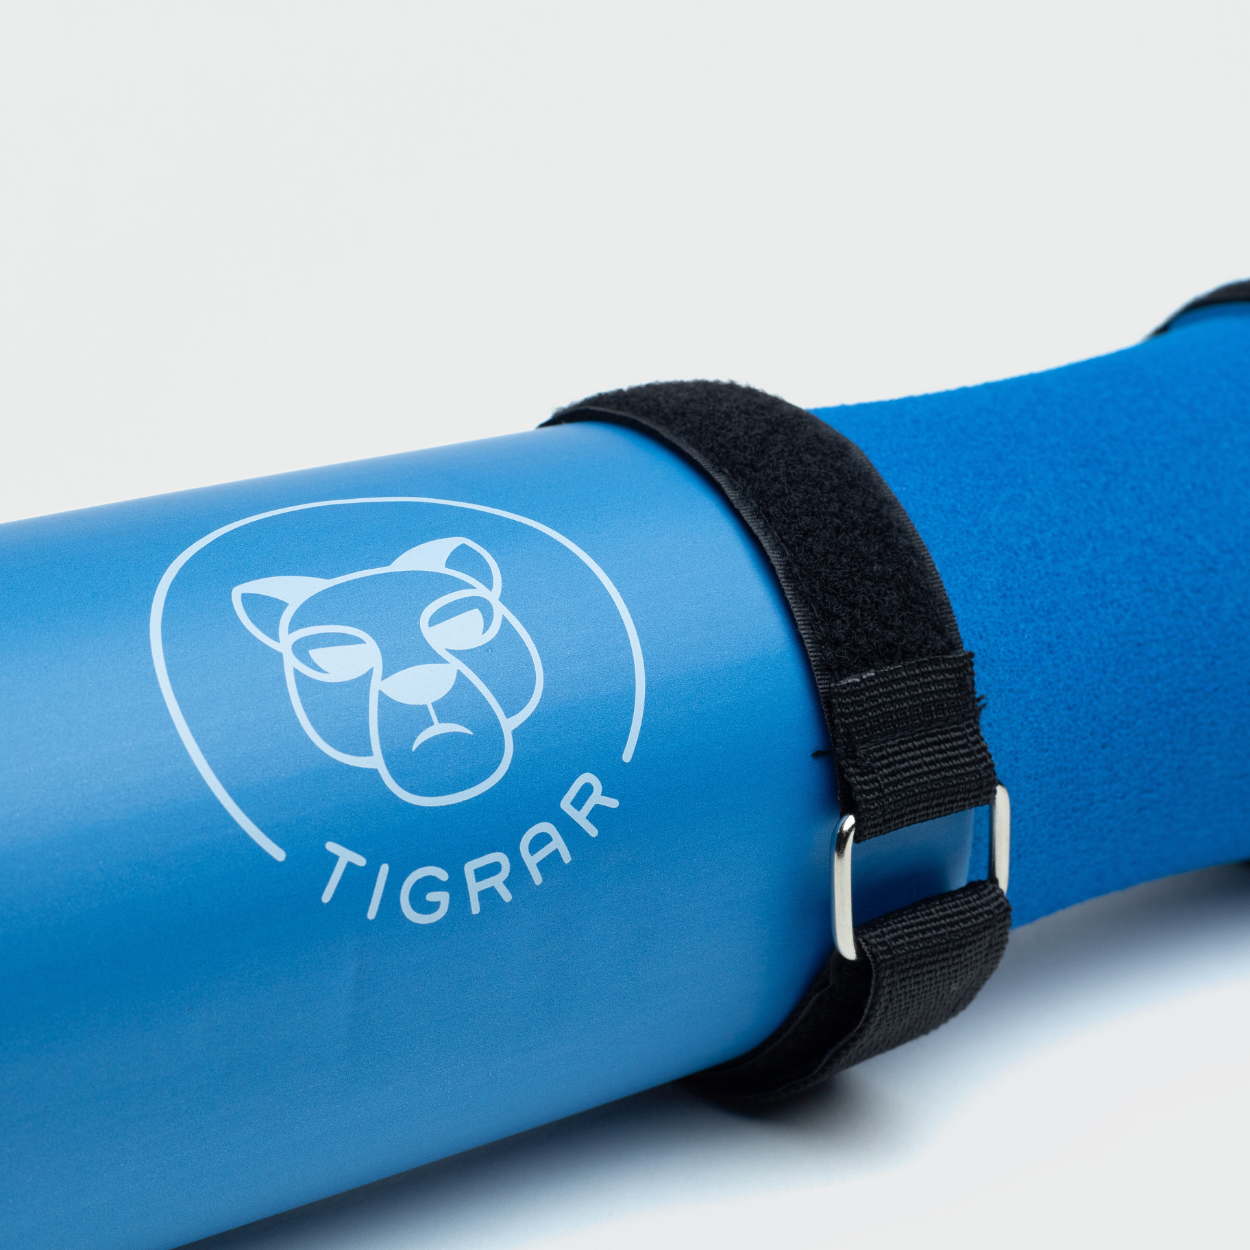 Close-up van blauwe Tigrar barbell pad, verhoogt stabiliteit bij krachtoefeningen.